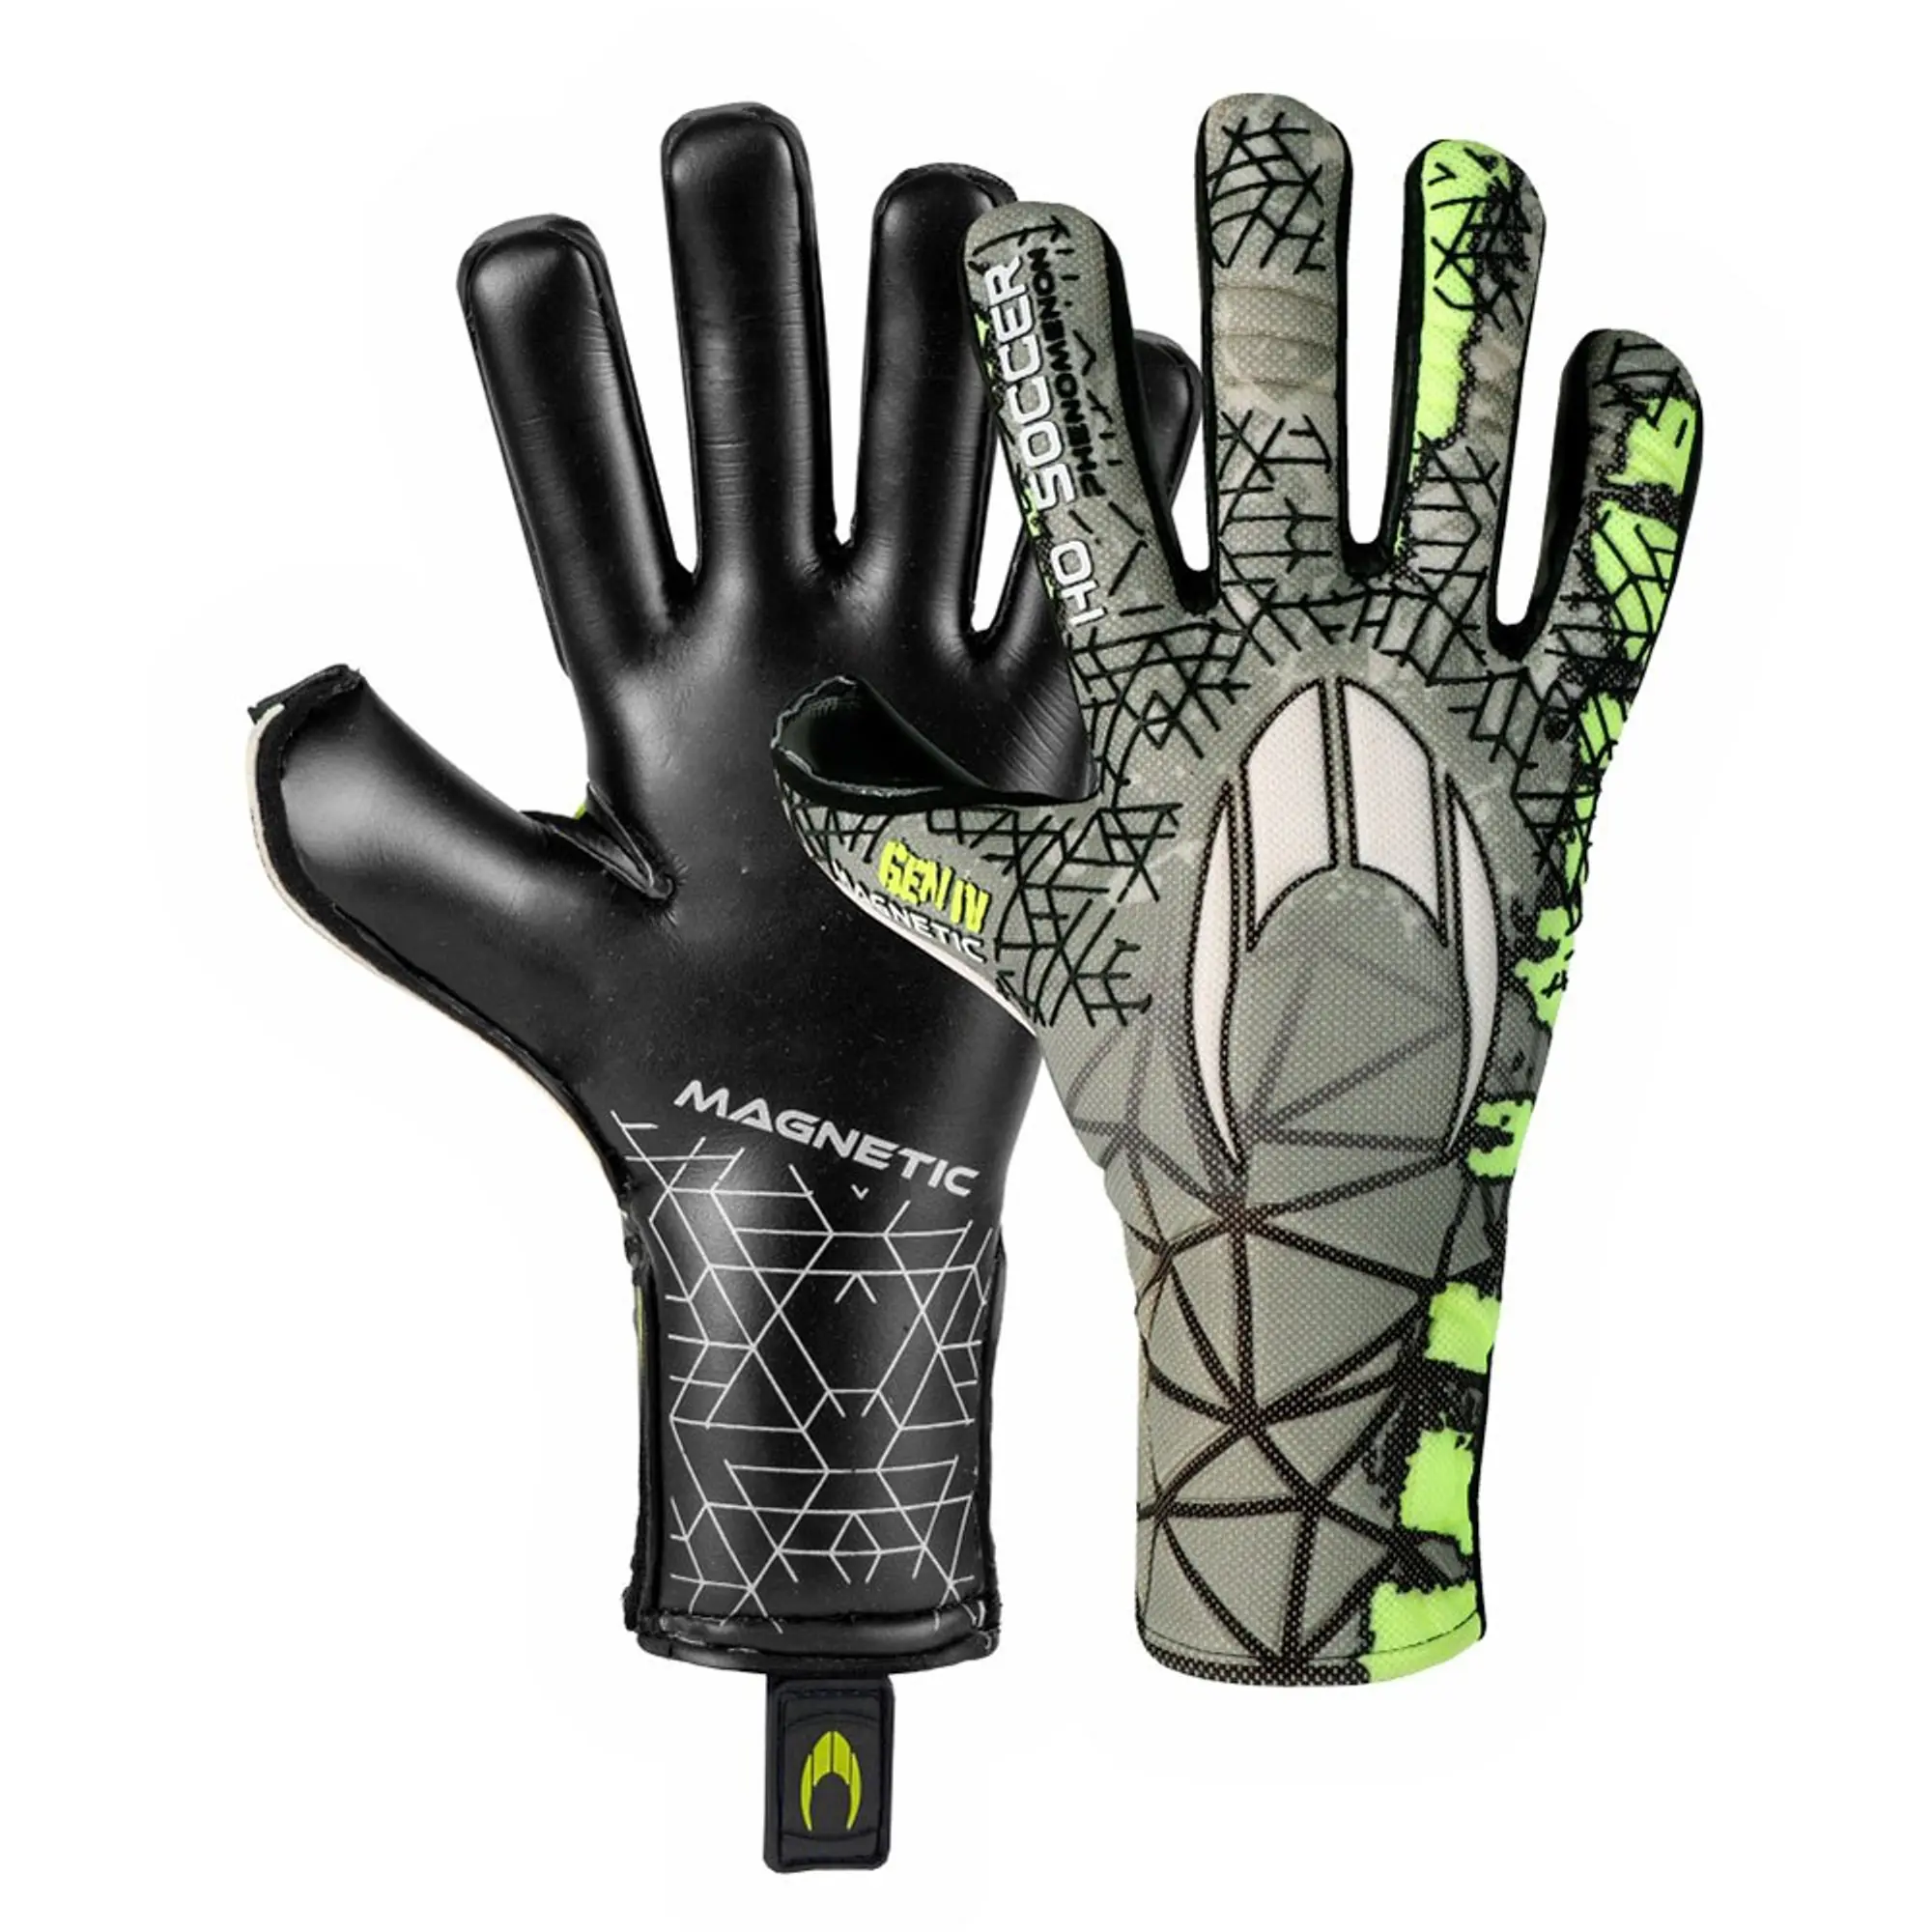 Ho Soccer Phenomenon Magnetic Iv Negative Goalkeeper Gloves  - Green